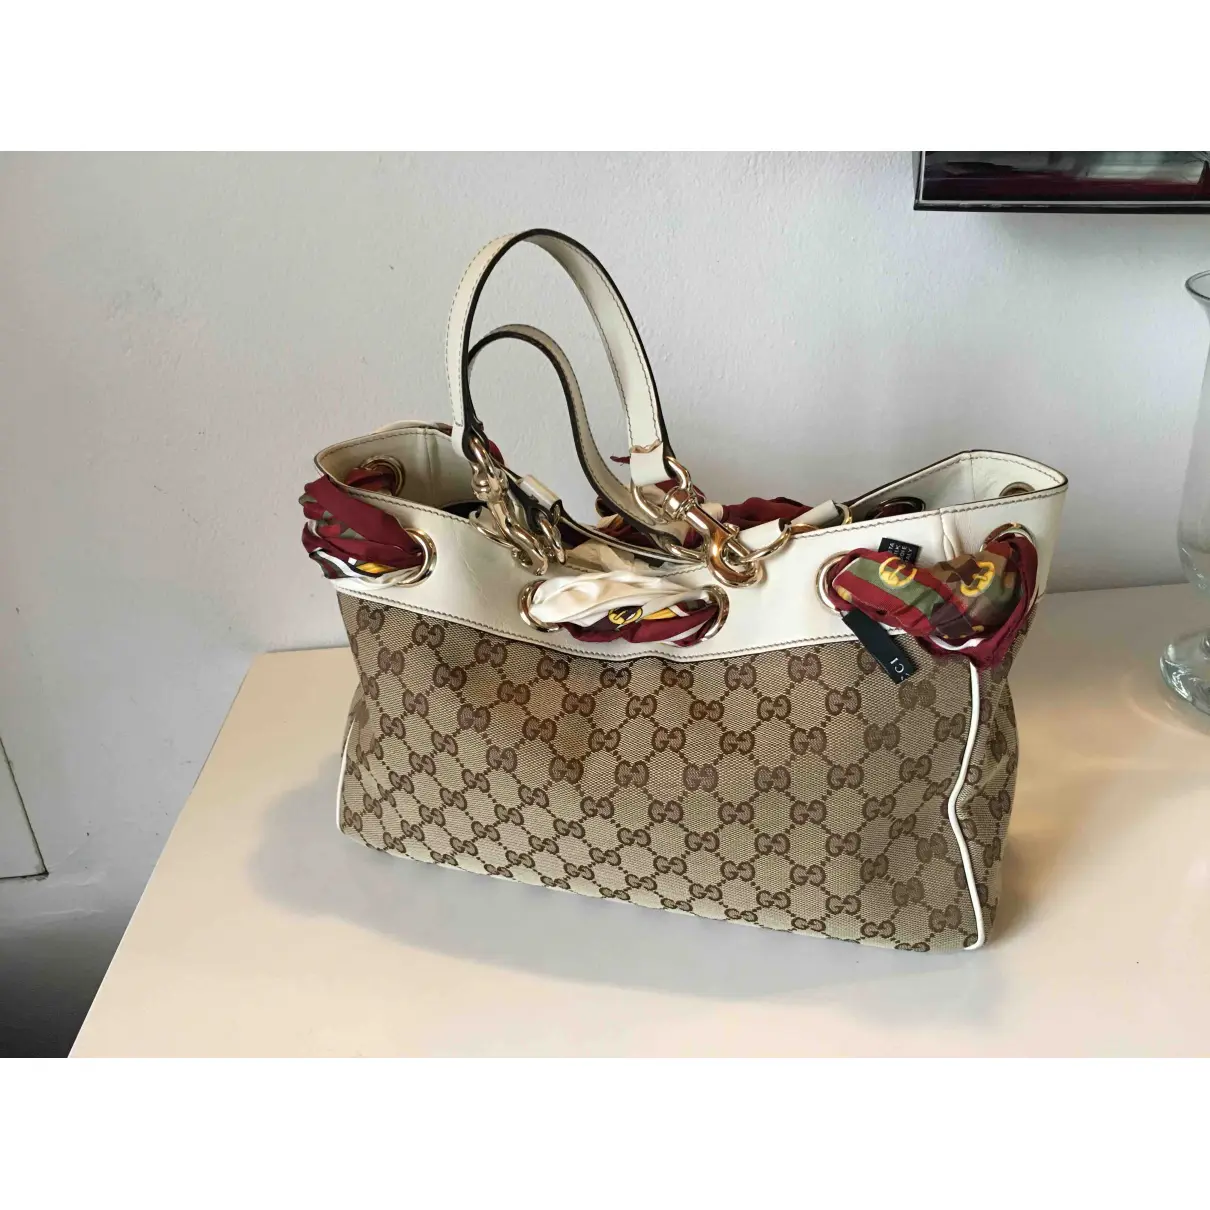 Positano cloth handbag Gucci